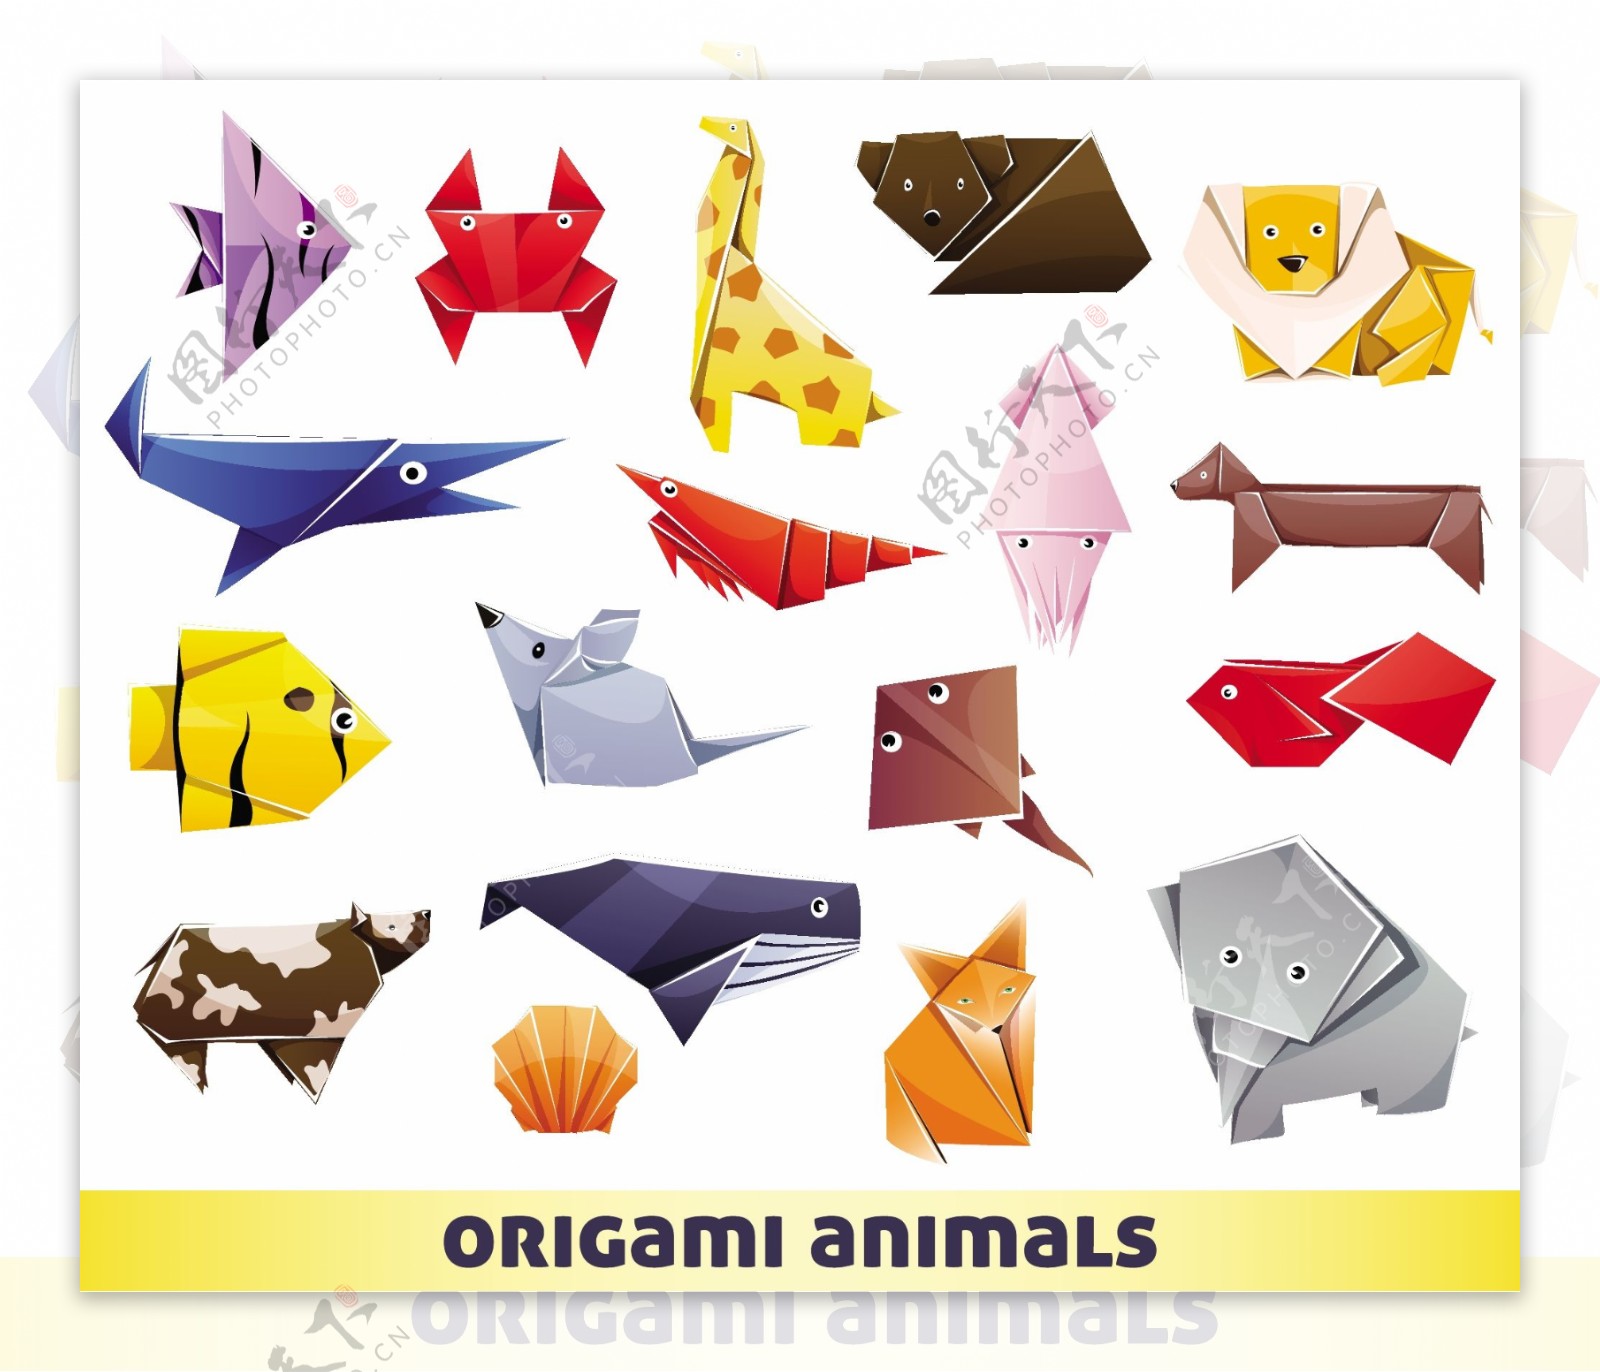 18款彩色折纸动物设计矢量素材